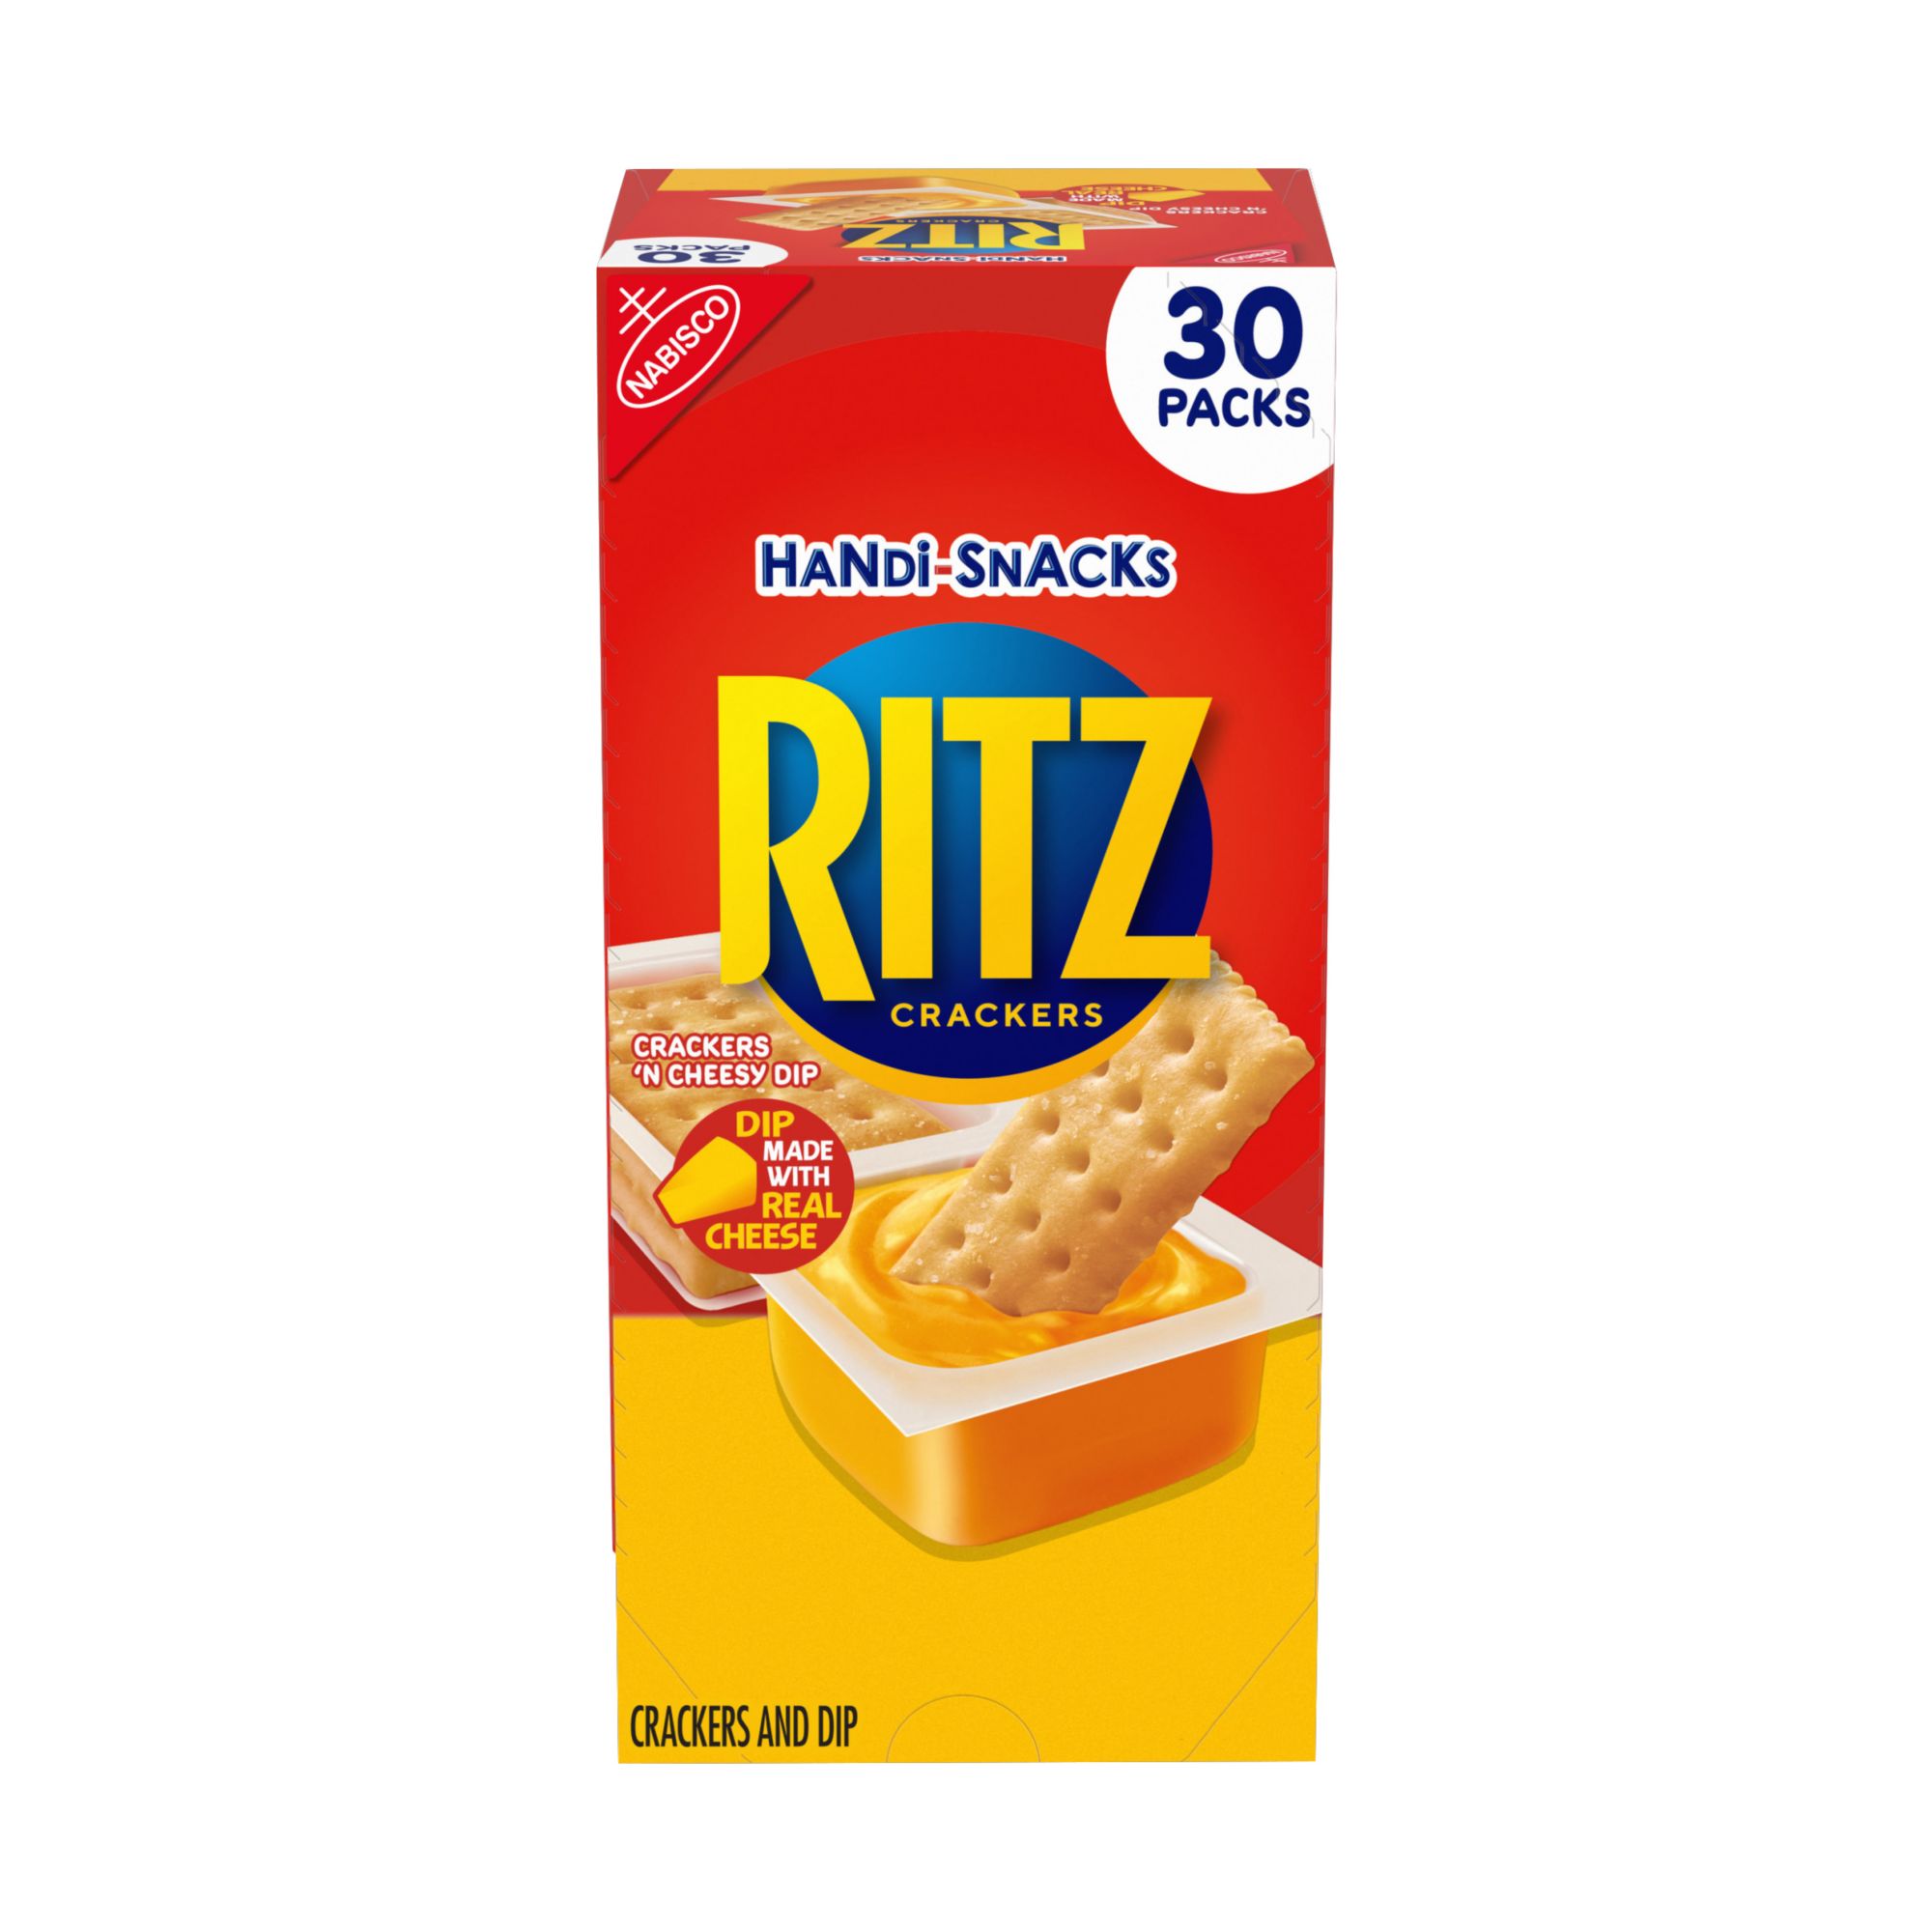 Handi-Snacks Ritz Crackers and Cheese Dip, 30 pk./0.95 oz.